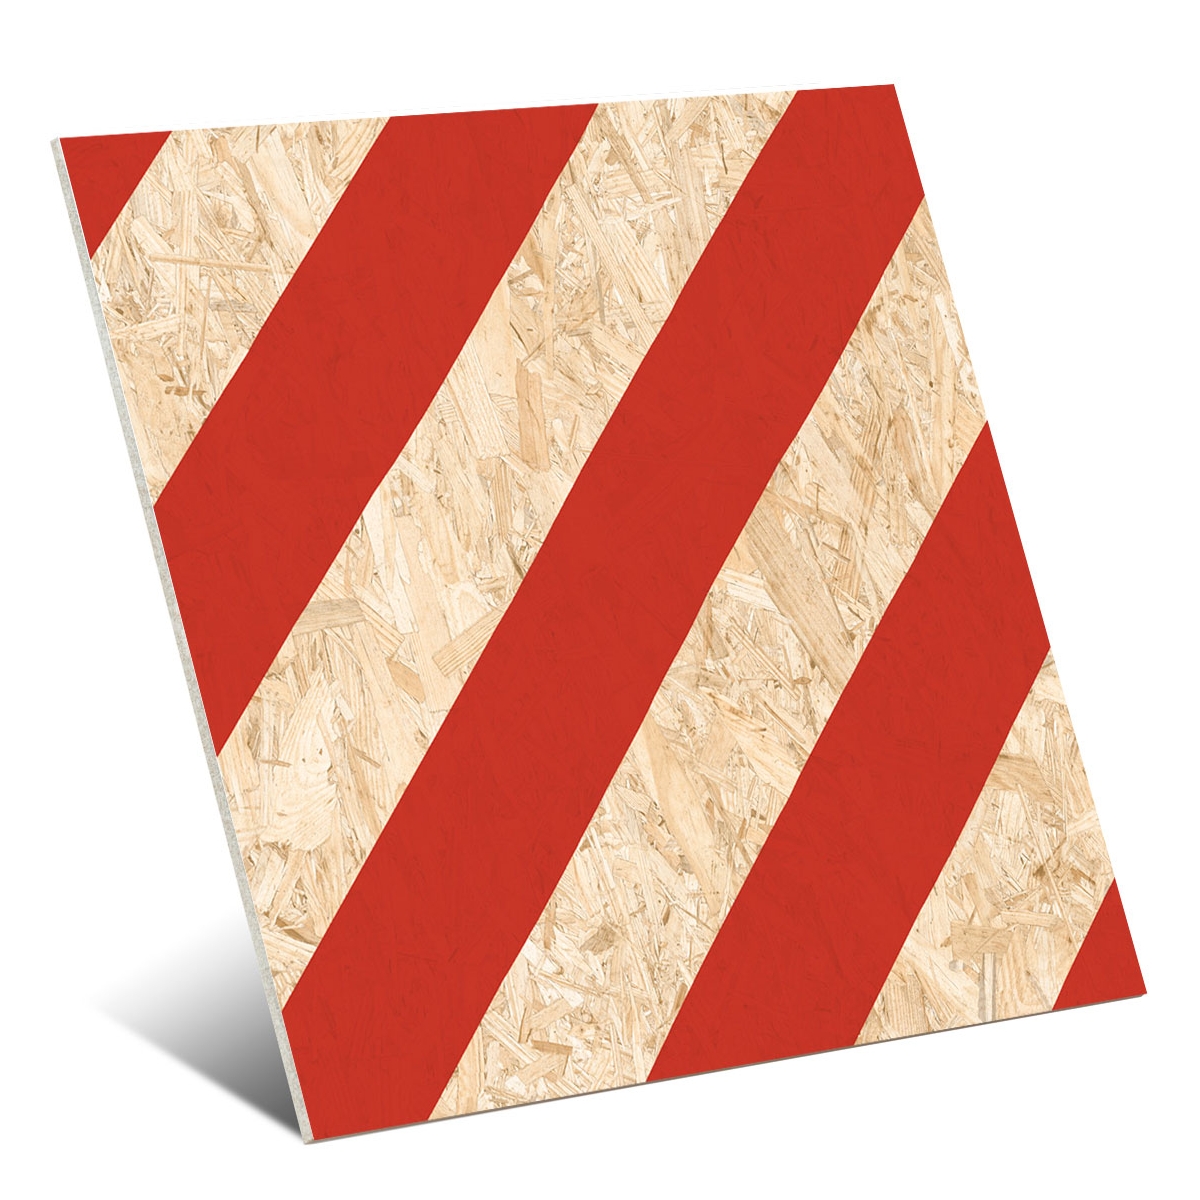 Soalho de imitação de madeira Vives - Nenets Natural Red Rectificado 59,3x59,3 cm (caixa 1,05 m2)